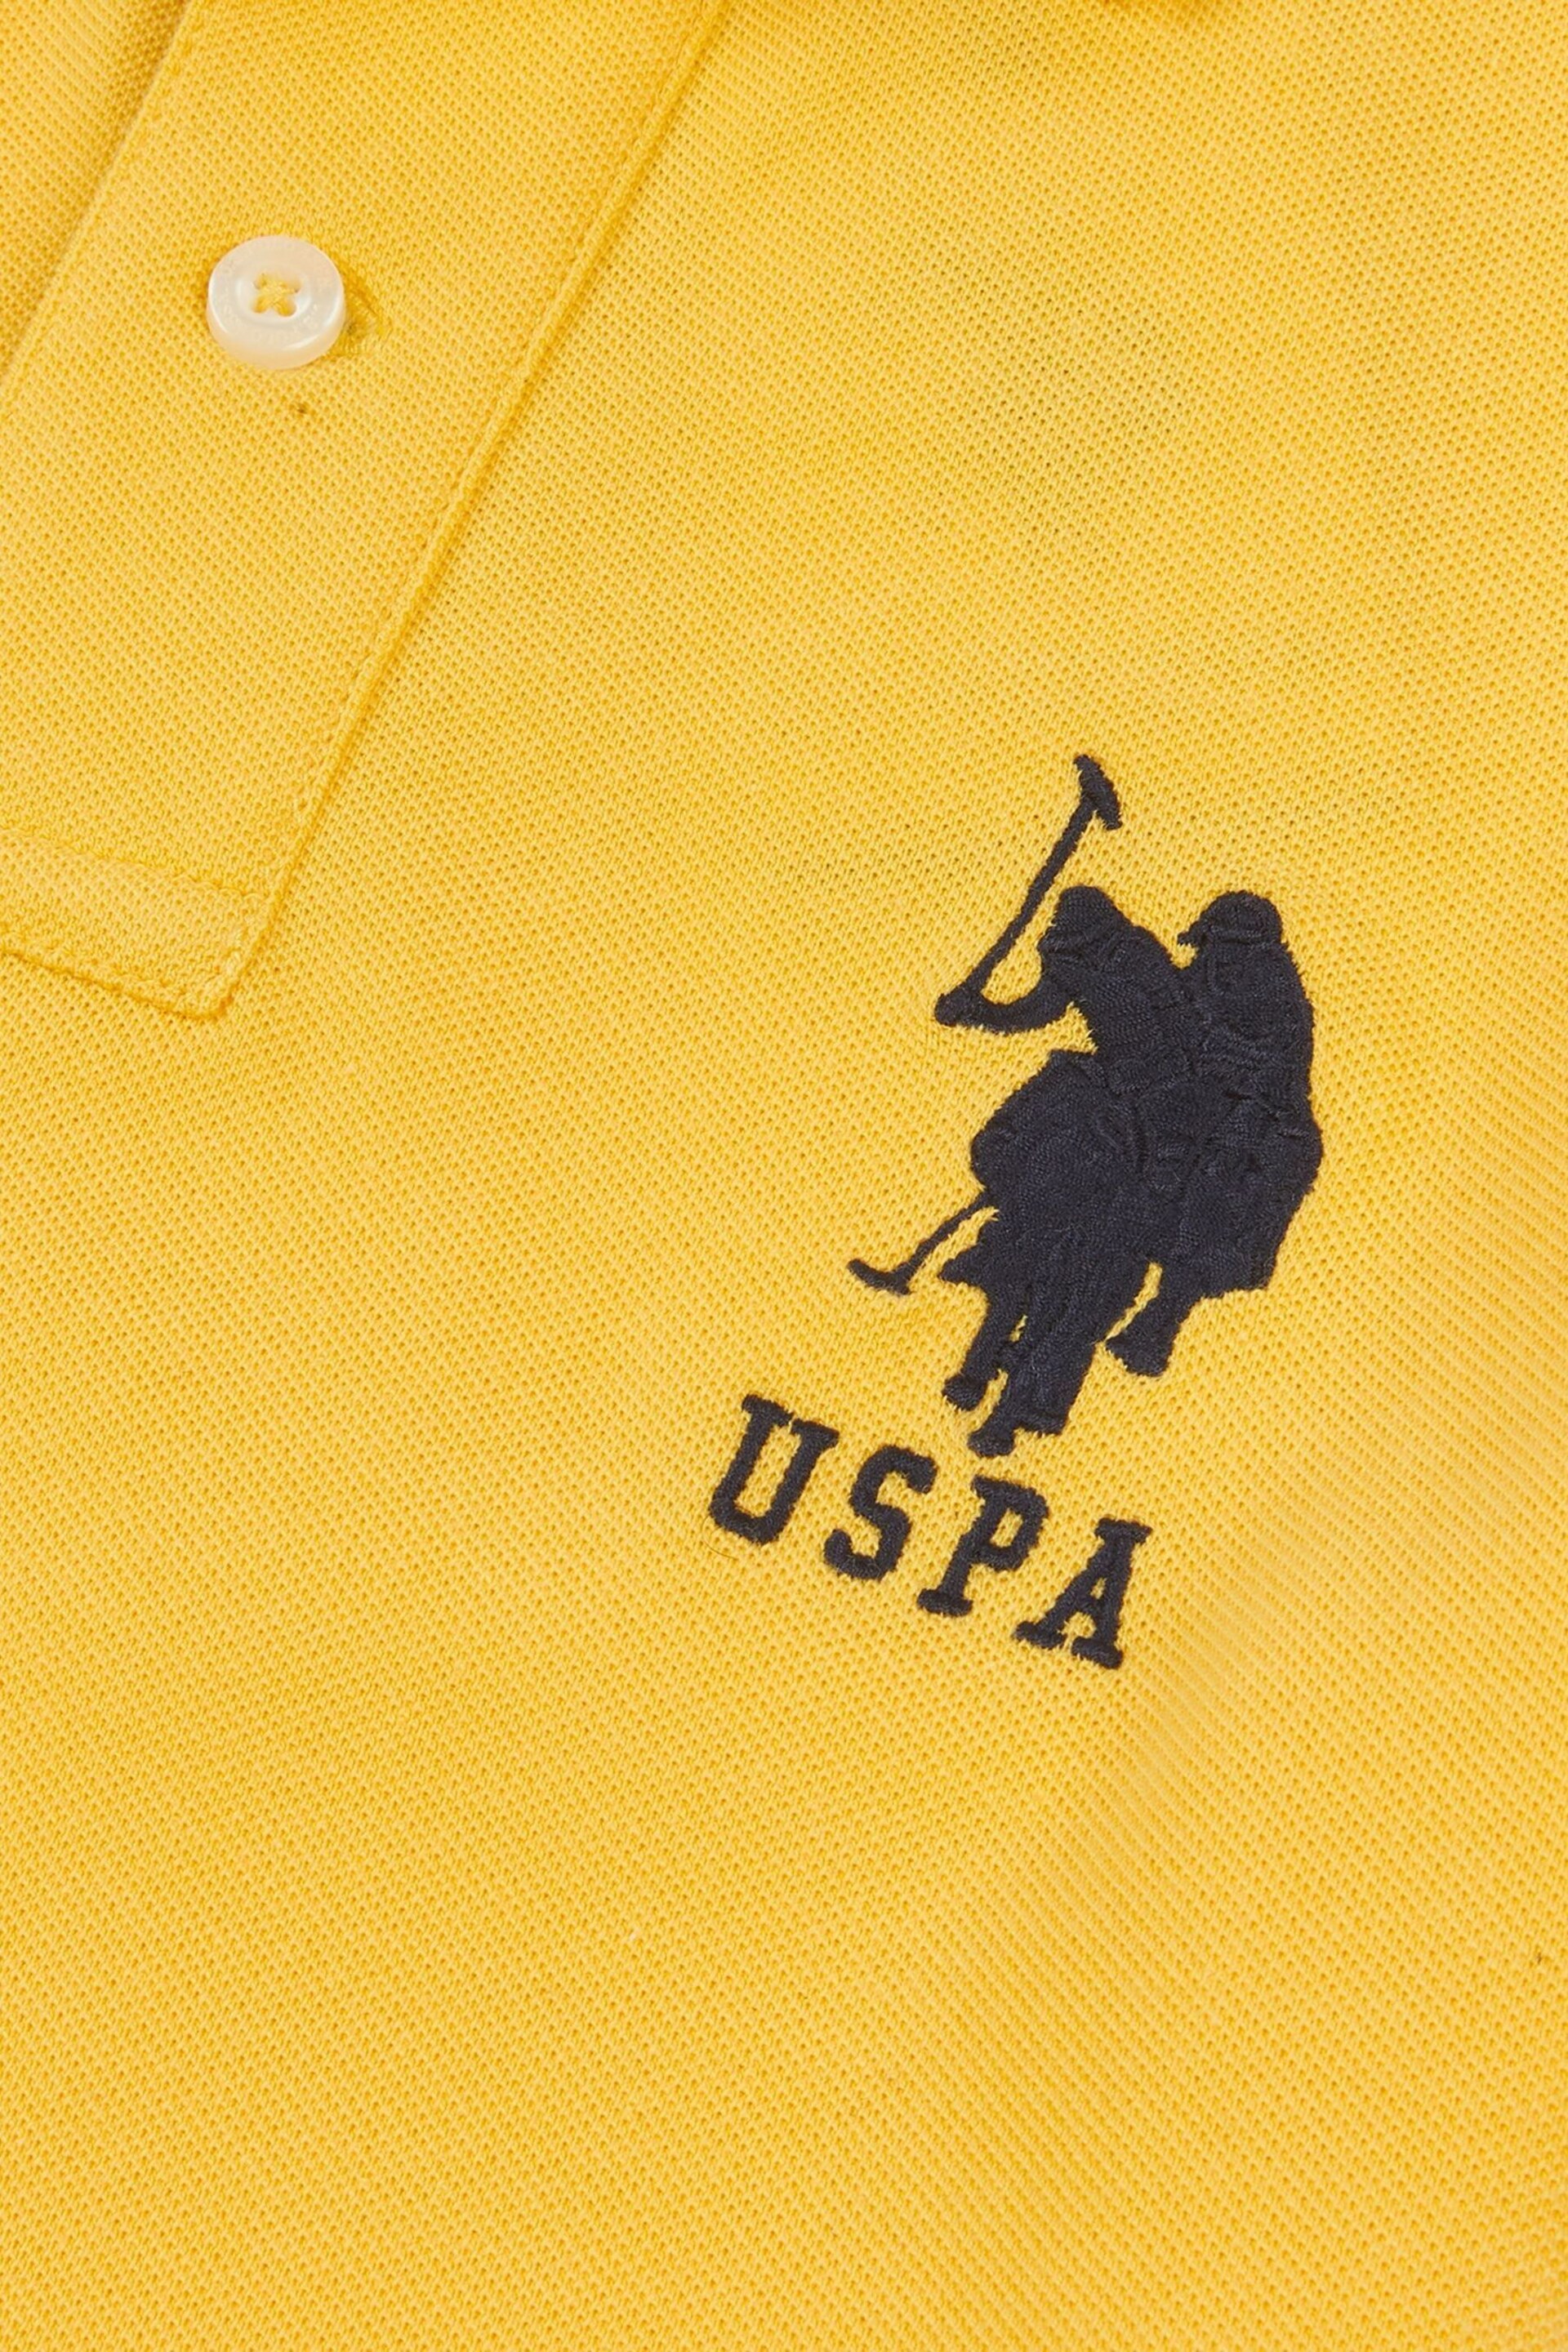 U.S. Polo Assn. Boys Blue Player 3 Pique Polo Shirt - Image 8 of 8